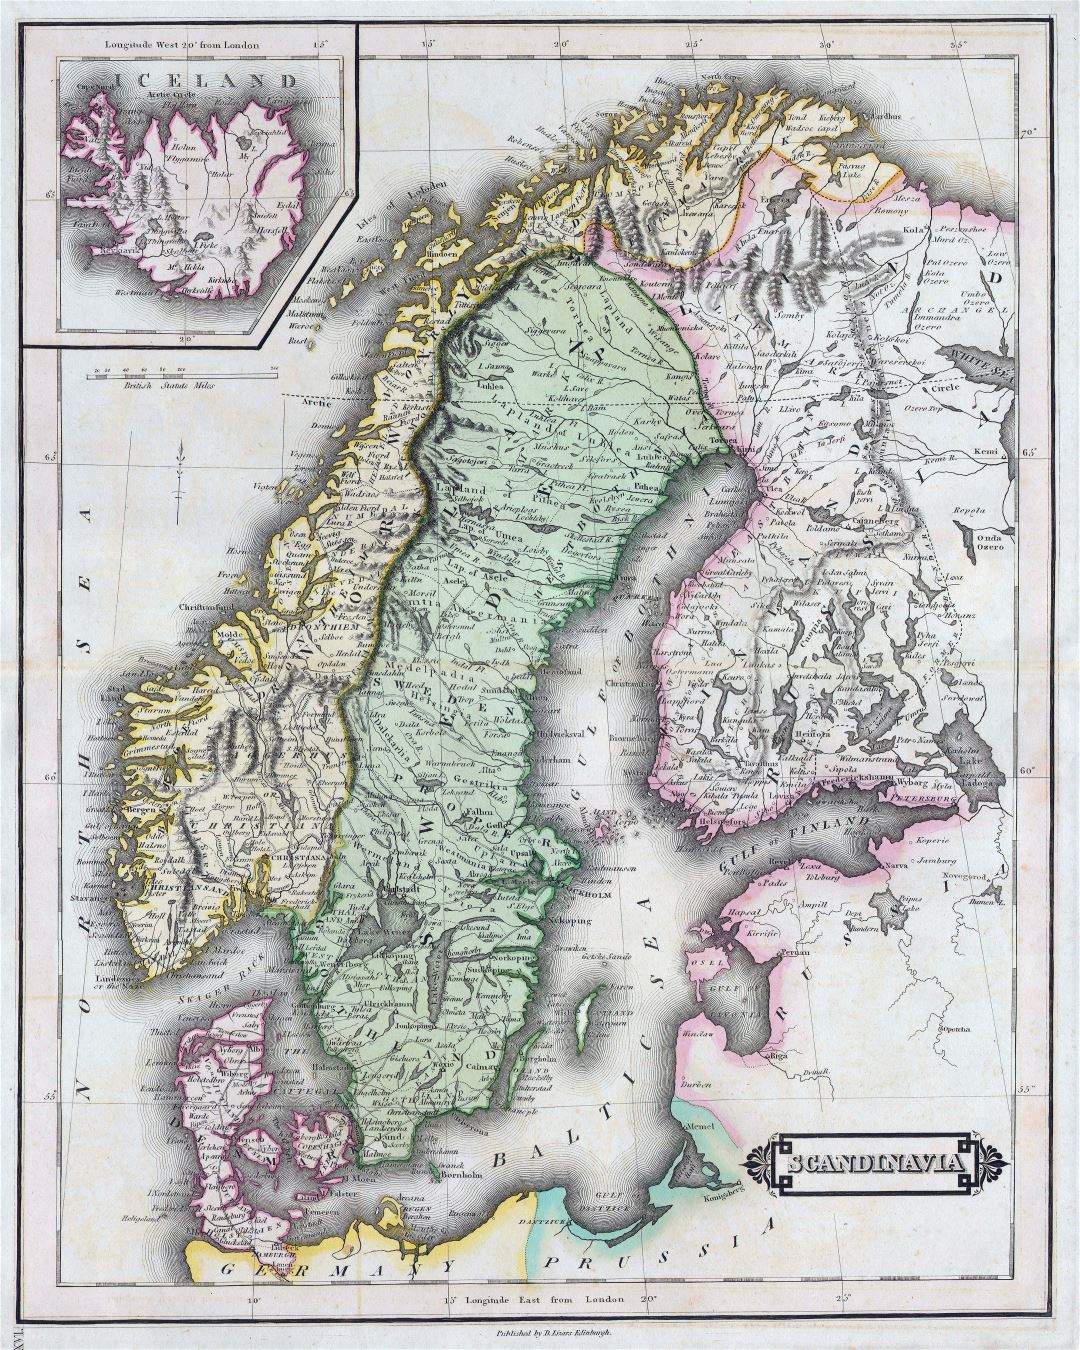 Mapa grande de edad detallado de Escandinavia - 1840